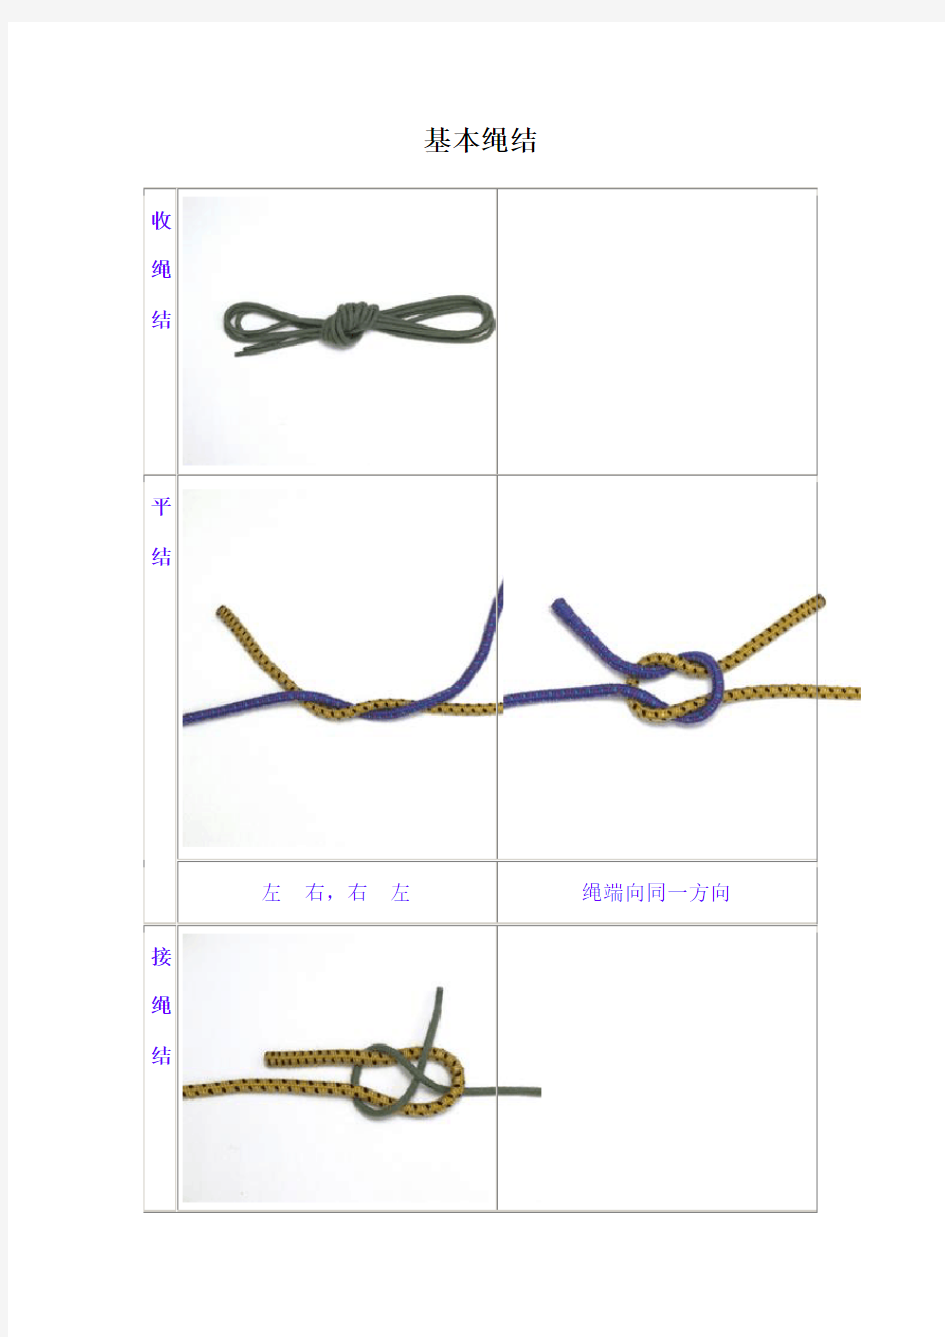 常识各种绳结的打法和用途图解很实用